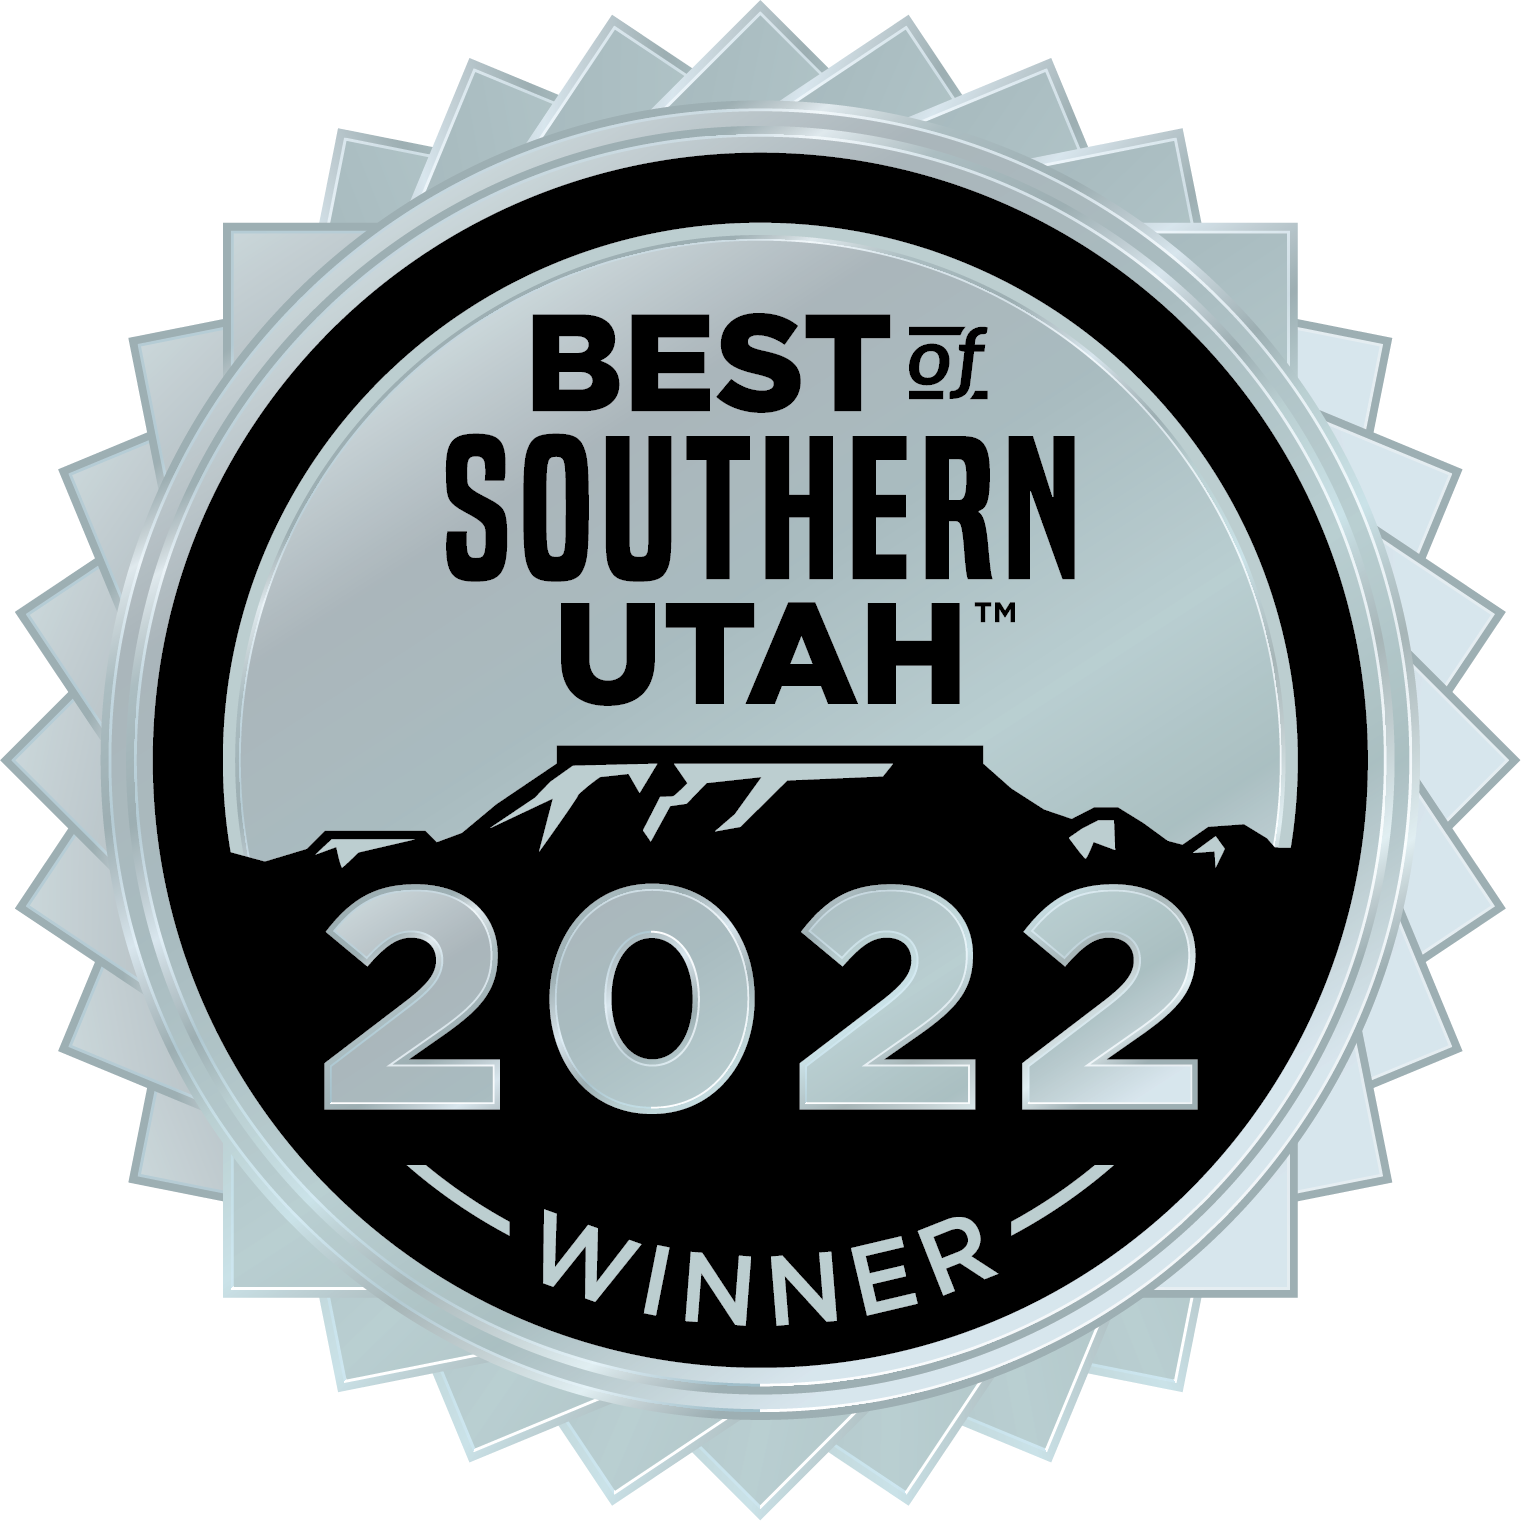 Best of Southern Utah Winner Badge